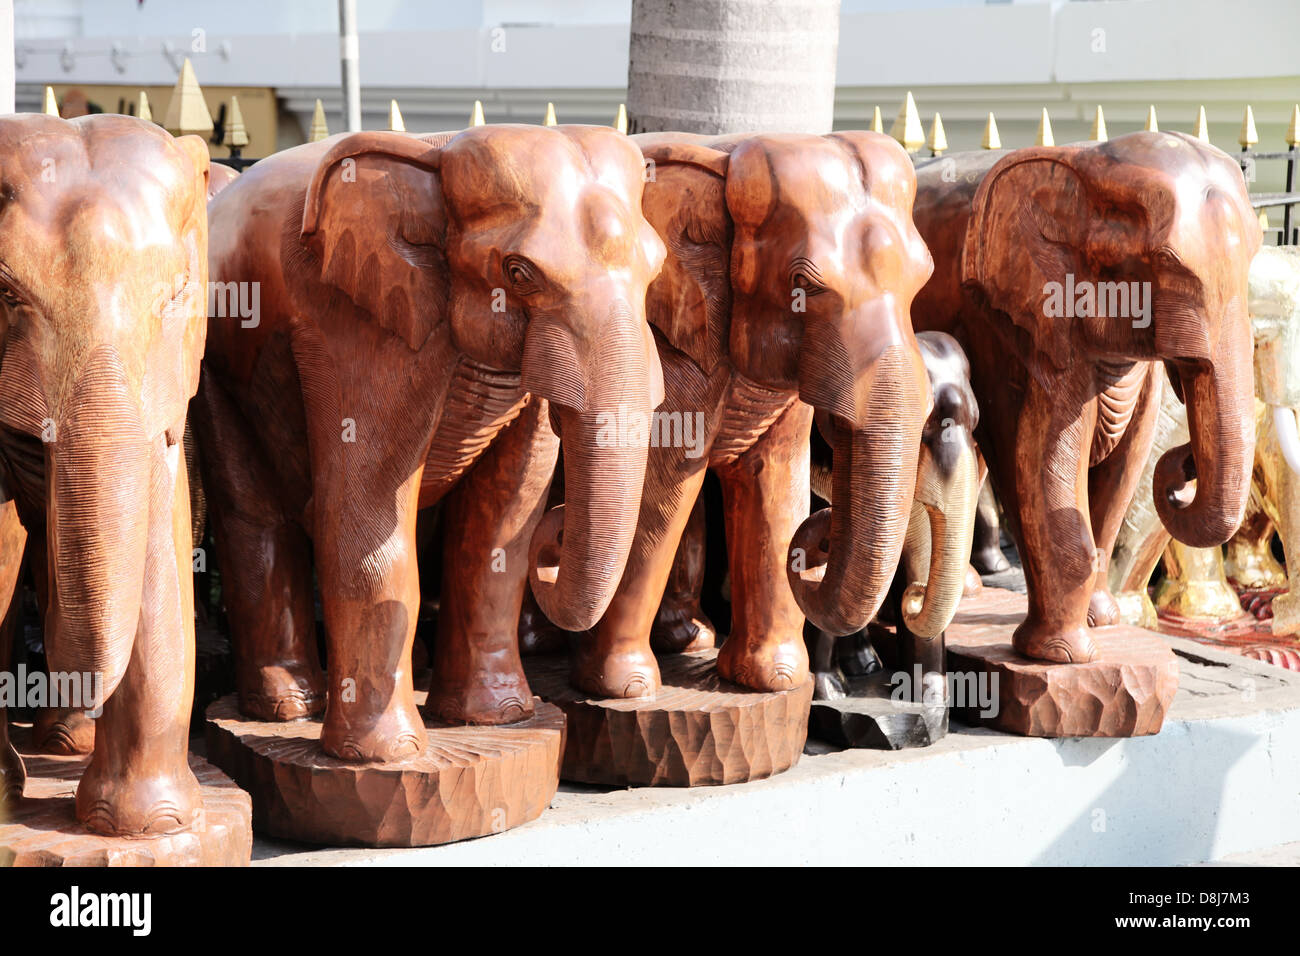 C'est une photo d'une sculpture de l'éléphant. C'est une statue de pierre ou de bois. Nous voyons une gamme, c'est en Thaïlande, en extérieur par la lumière du jour Banque D'Images